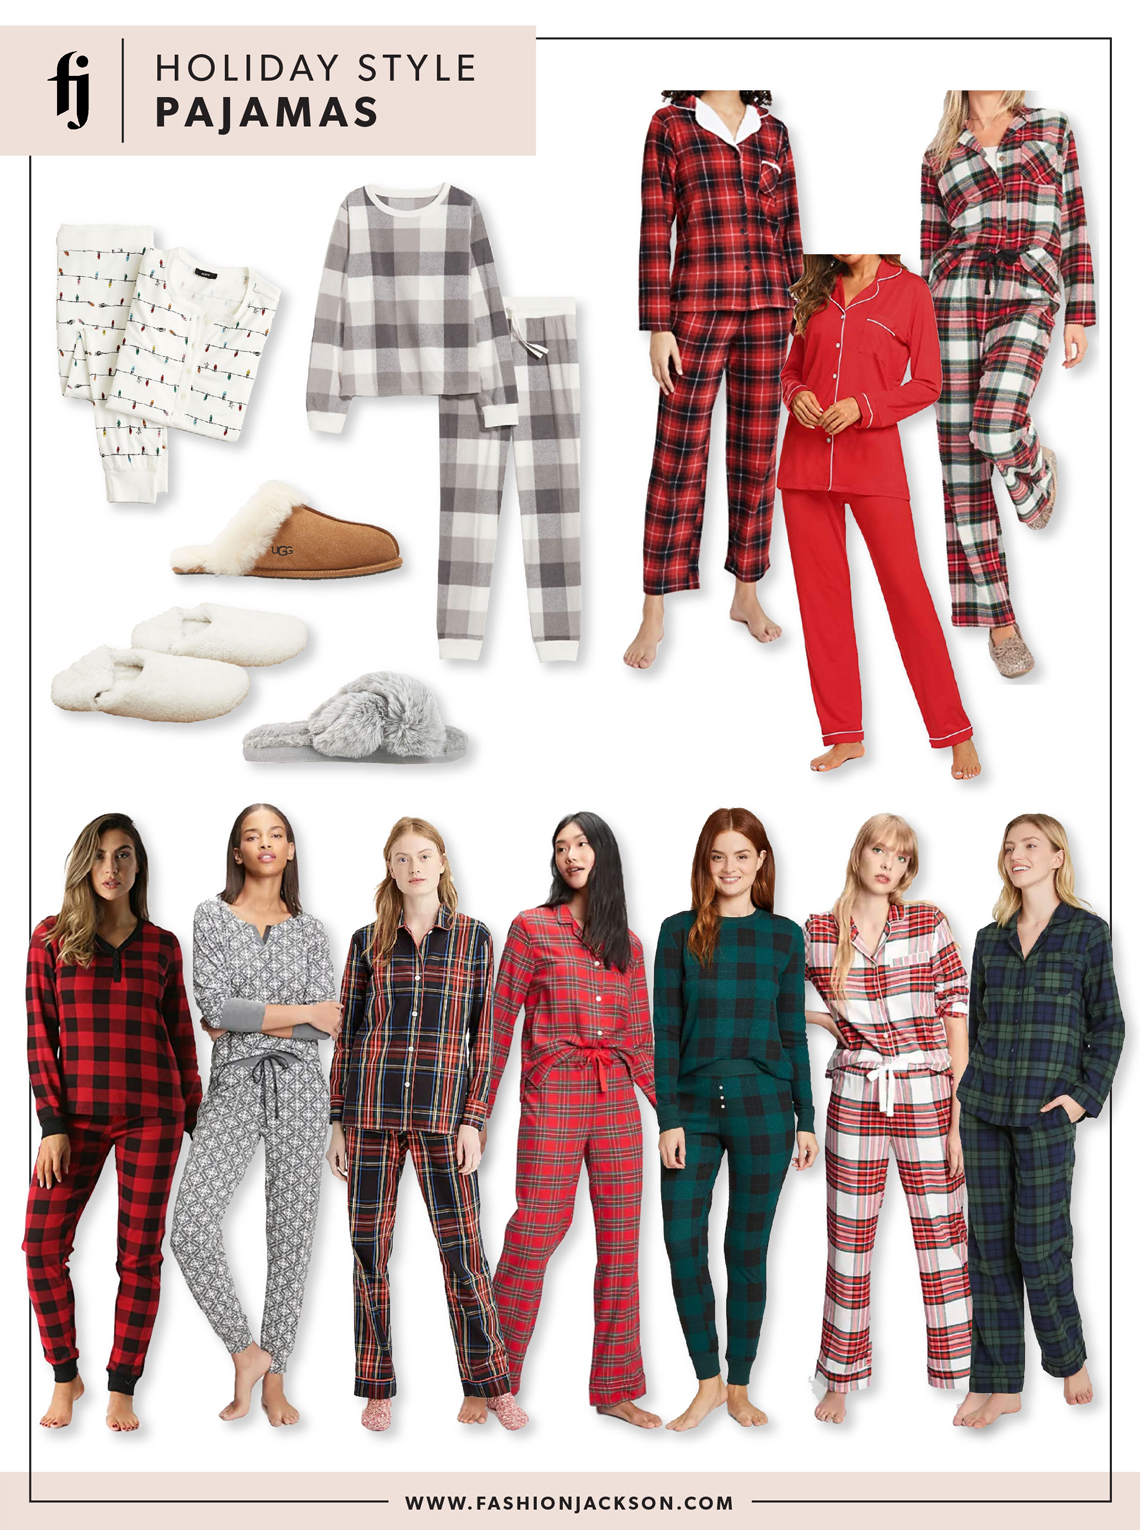 Fashion Jackson Holiday Pajamas